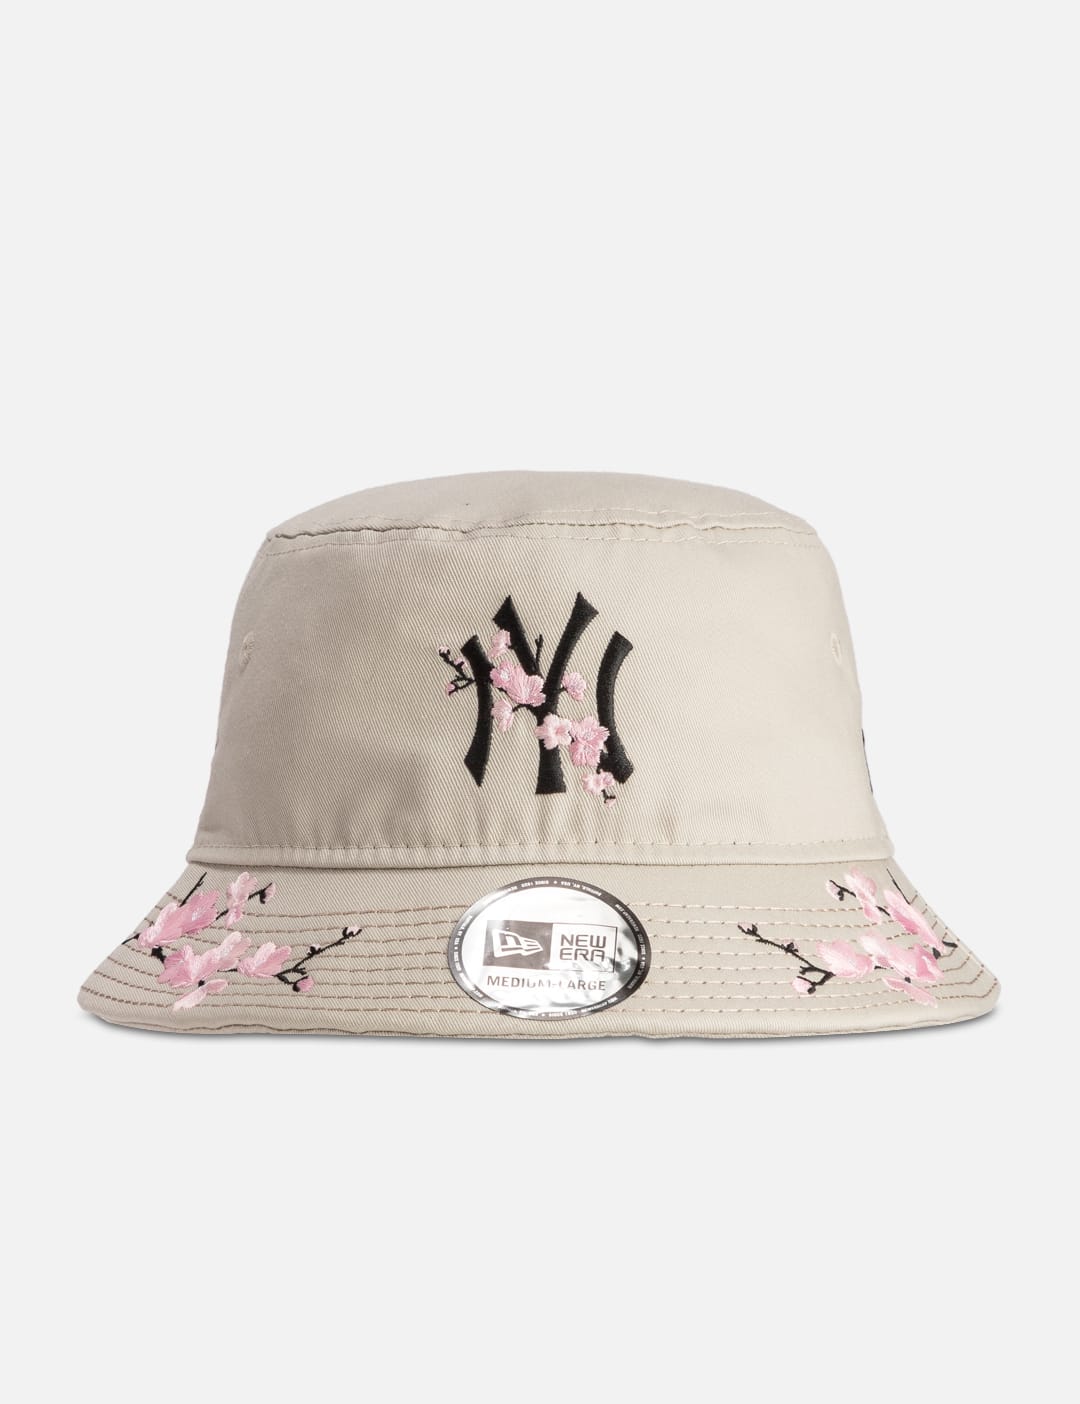 New Era   New York Yankees Sakura Bucket Hat   HBX   Globally